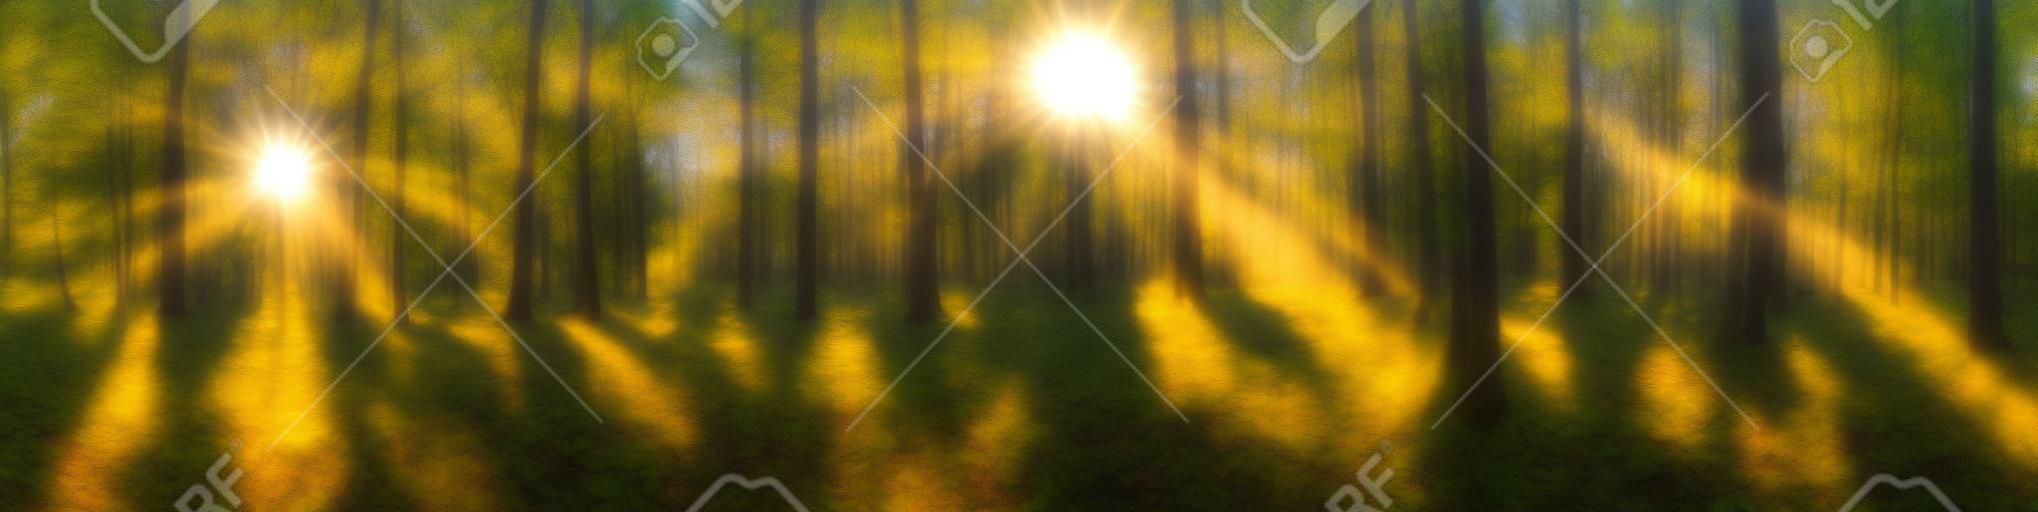 Wunderschönes Waldpanorama mit strahlender Sonne durch die Bäume